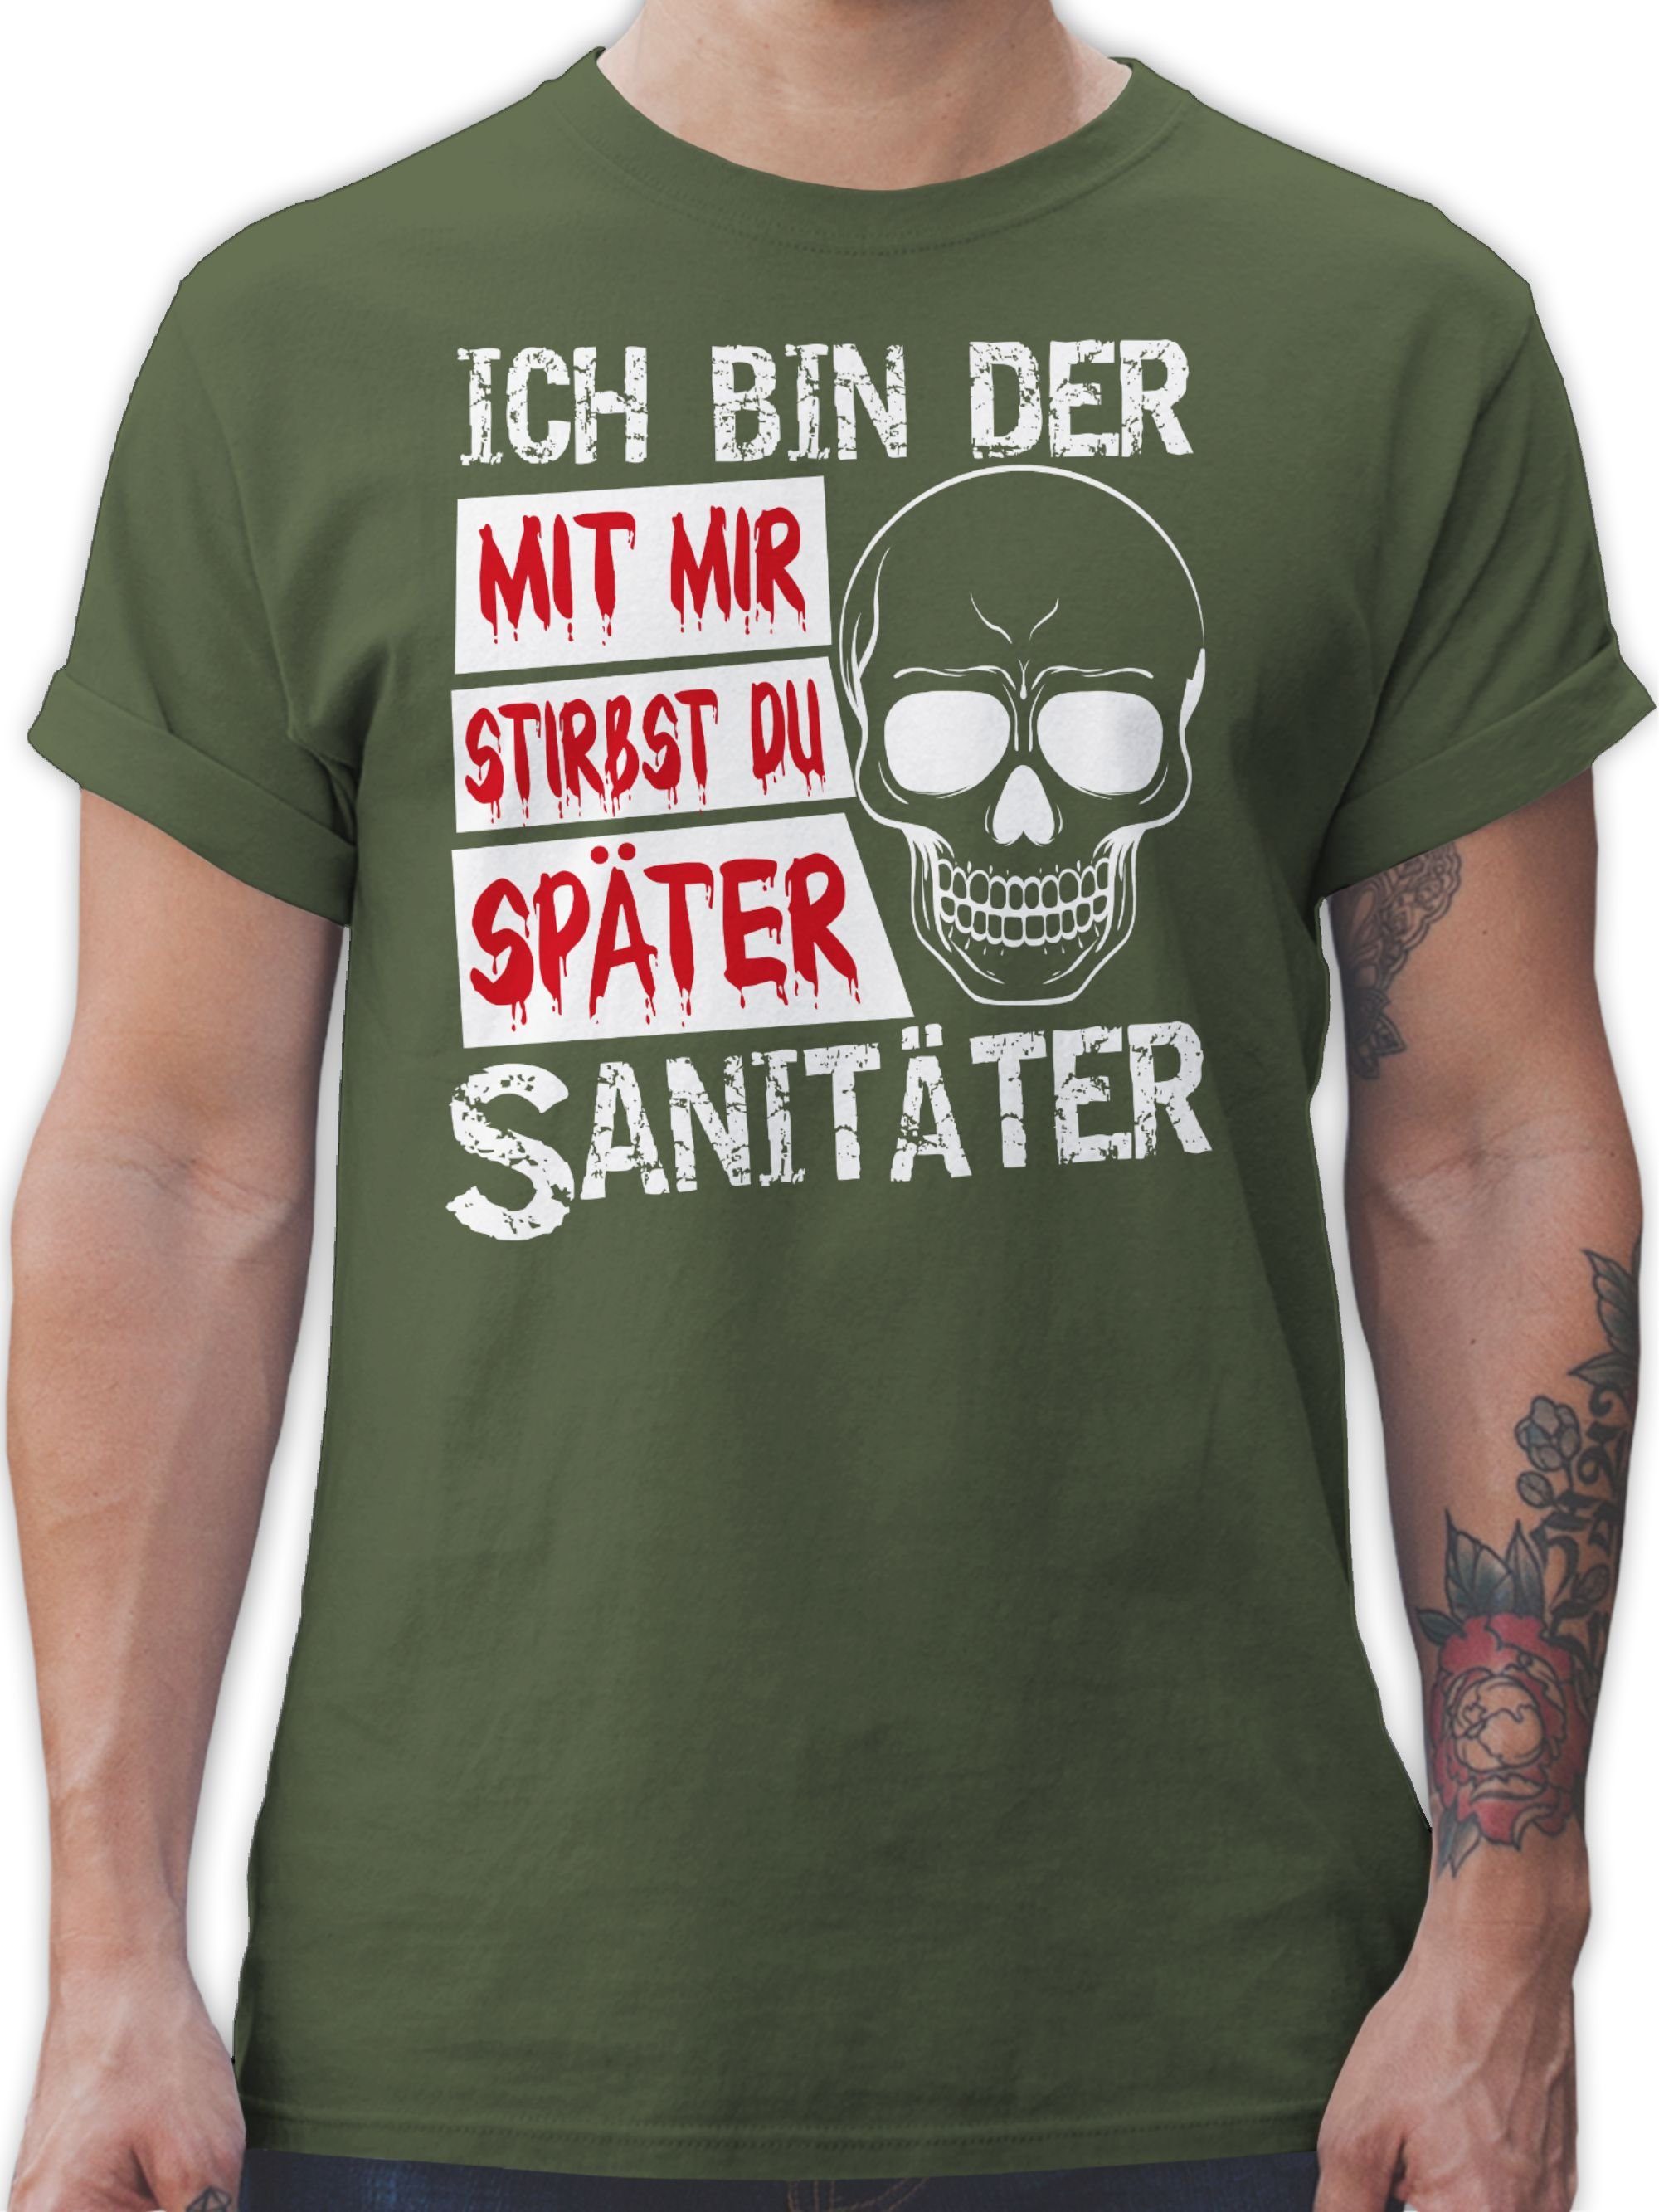 Shirtracer T-Shirt Mit mir stirbst du später Sanitäter Halloween Kostüme Herren 2 Army Grün